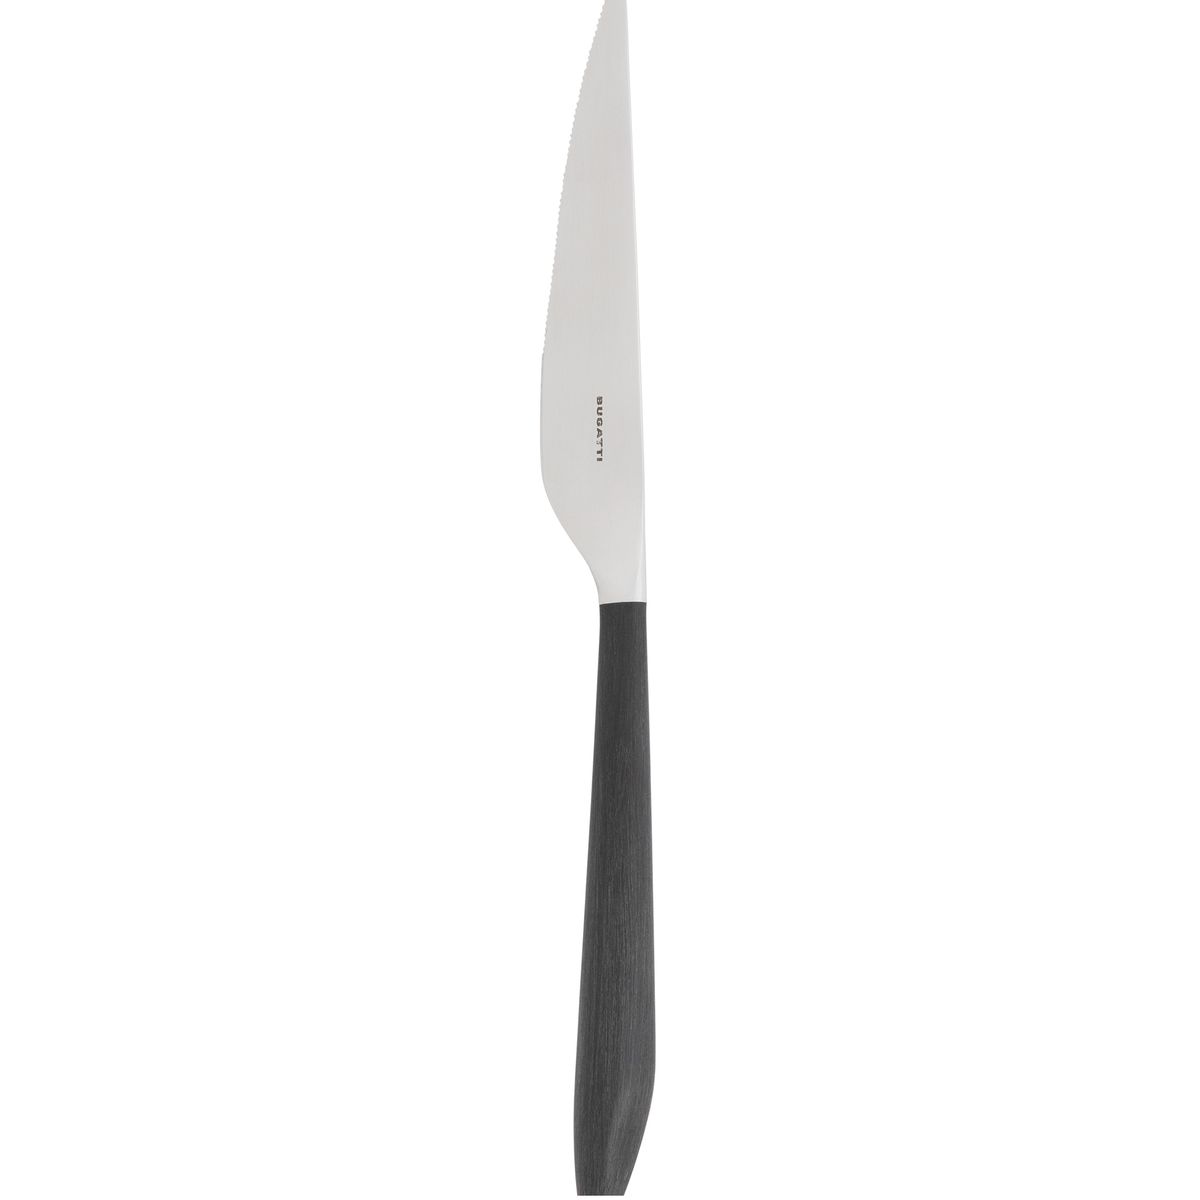 ナイフ アレス ブラック 23.5cm テーブルナイフ イタリア製 食洗器対応